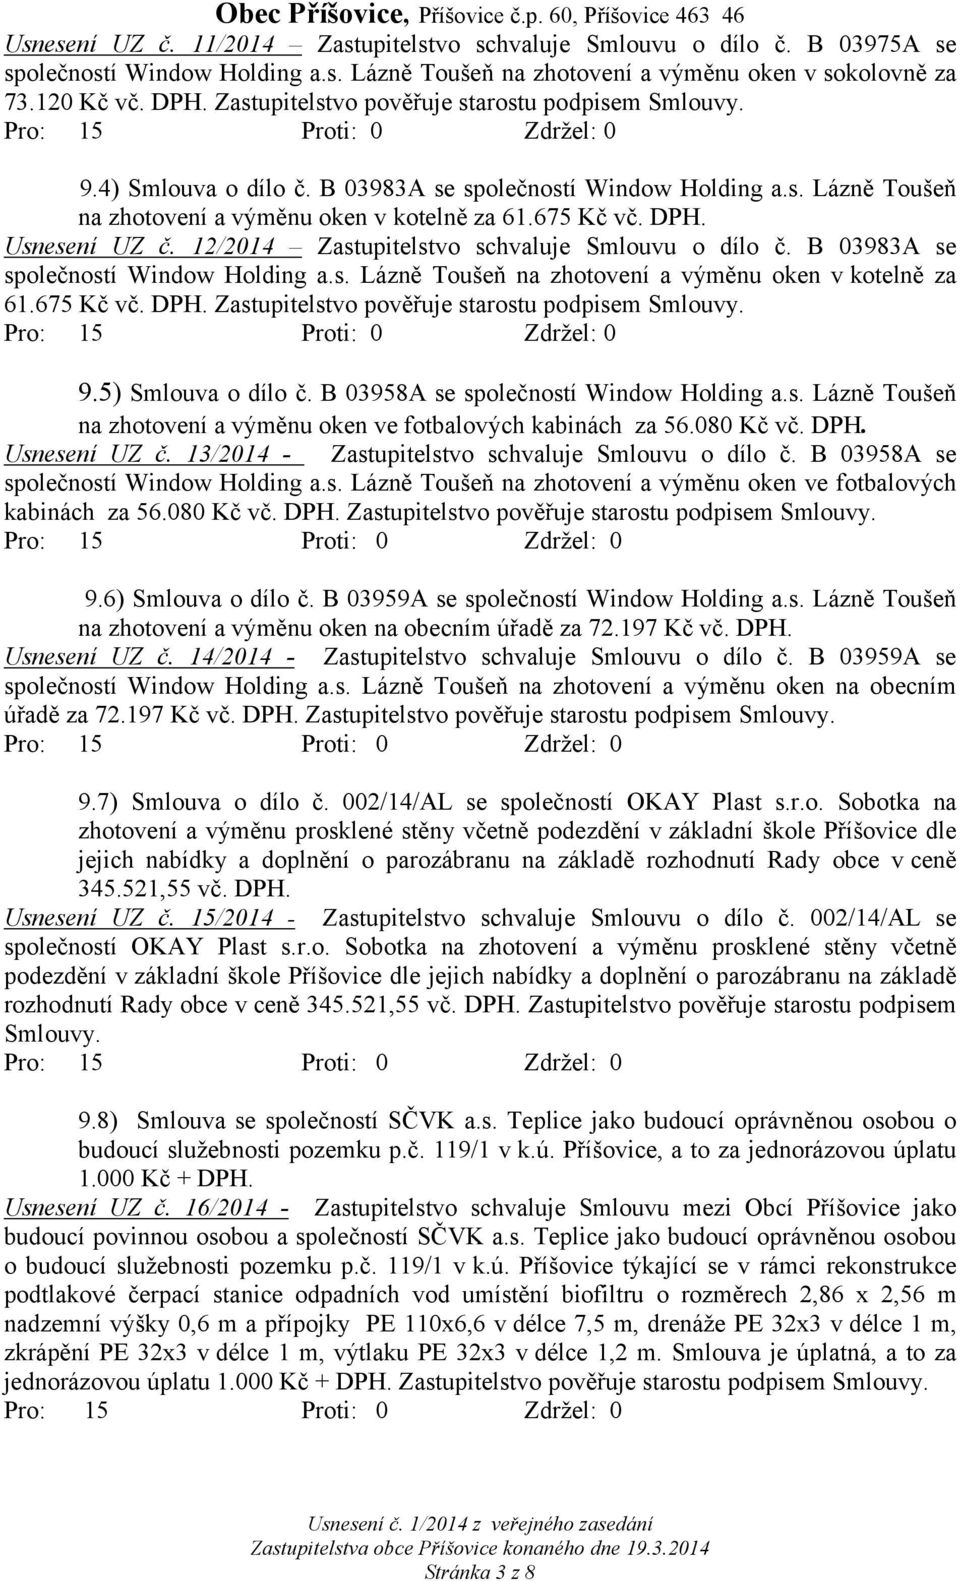 Usnesení UZ č. 12/2014 Zastupitelstvo schvaluje Smlouvu o dílo č. B 03983A se společností Window Holding a.s. Lázně Toušeň na zhotovení a výměnu oken v kotelně za 61.675 Kč vč. DPH.